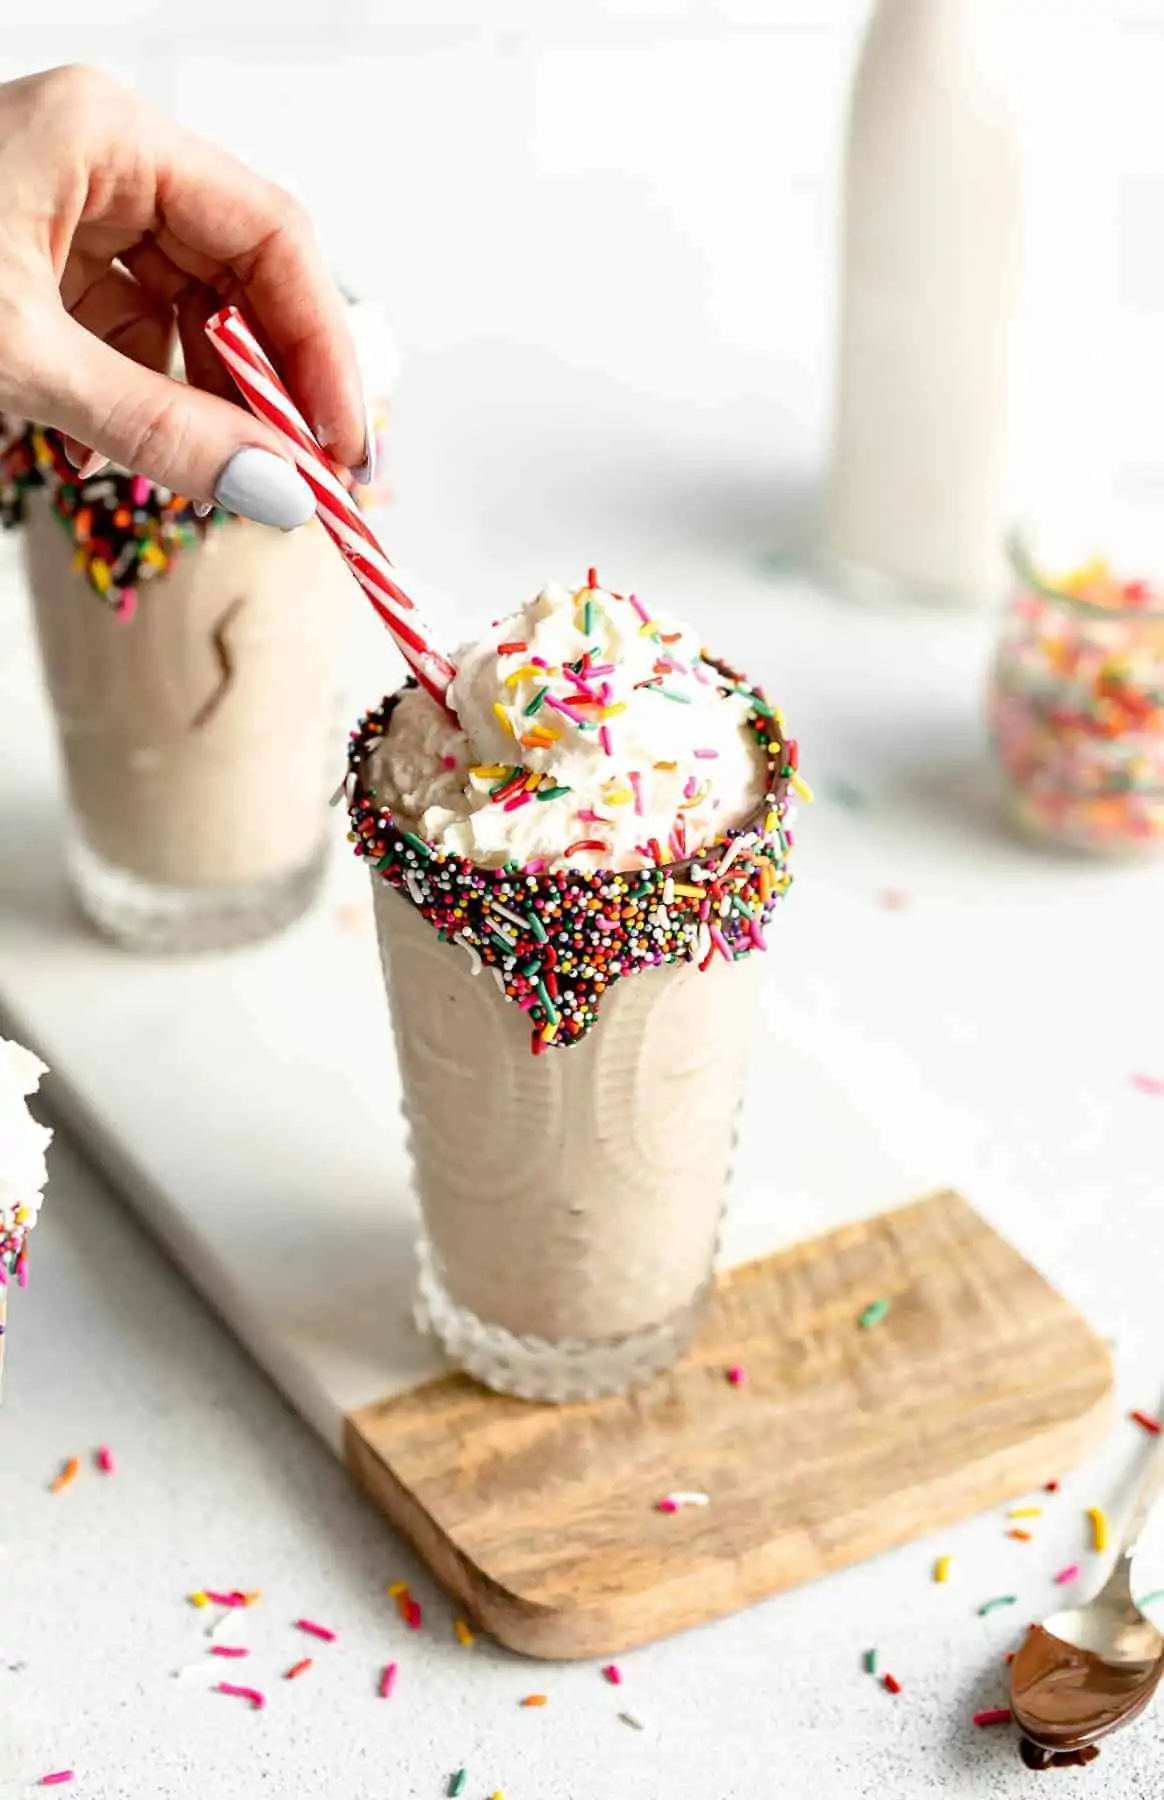 healthy vegan vanilla milkshake in a glass with sprinkles